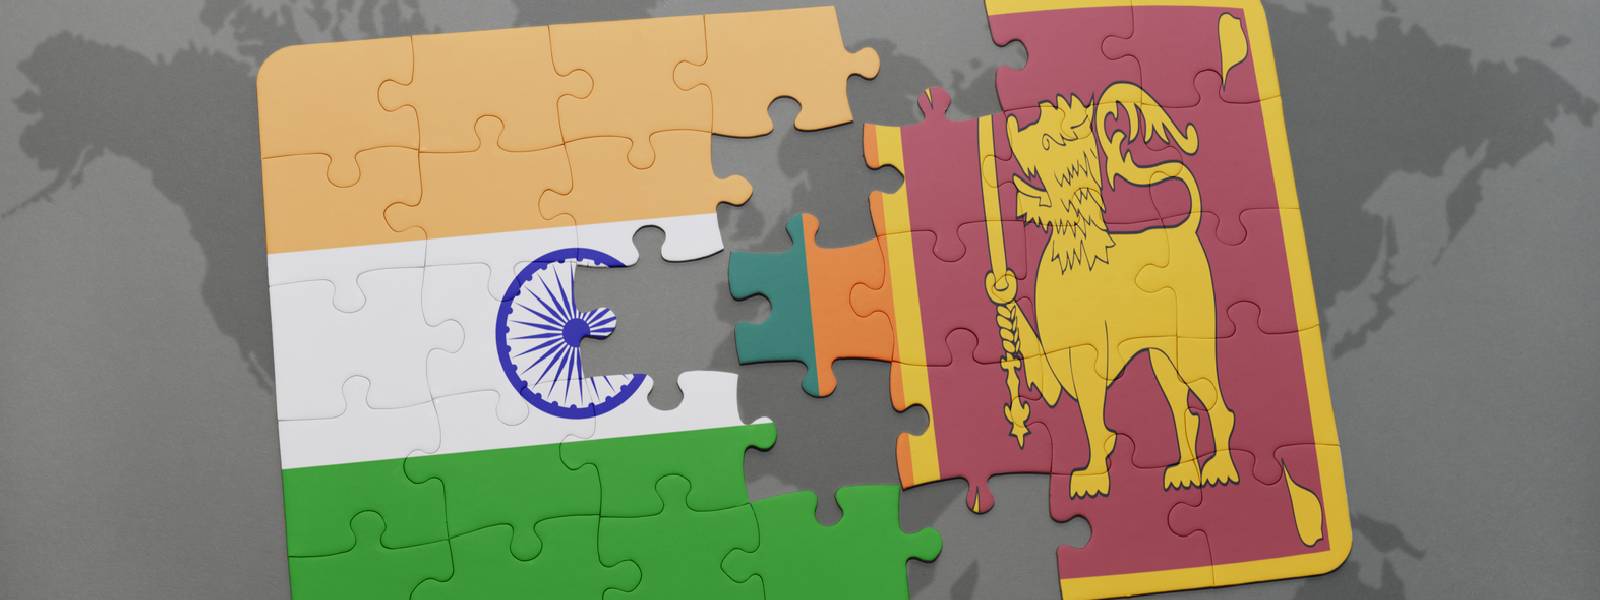 Sri Lanka, India resume talks on ETCA